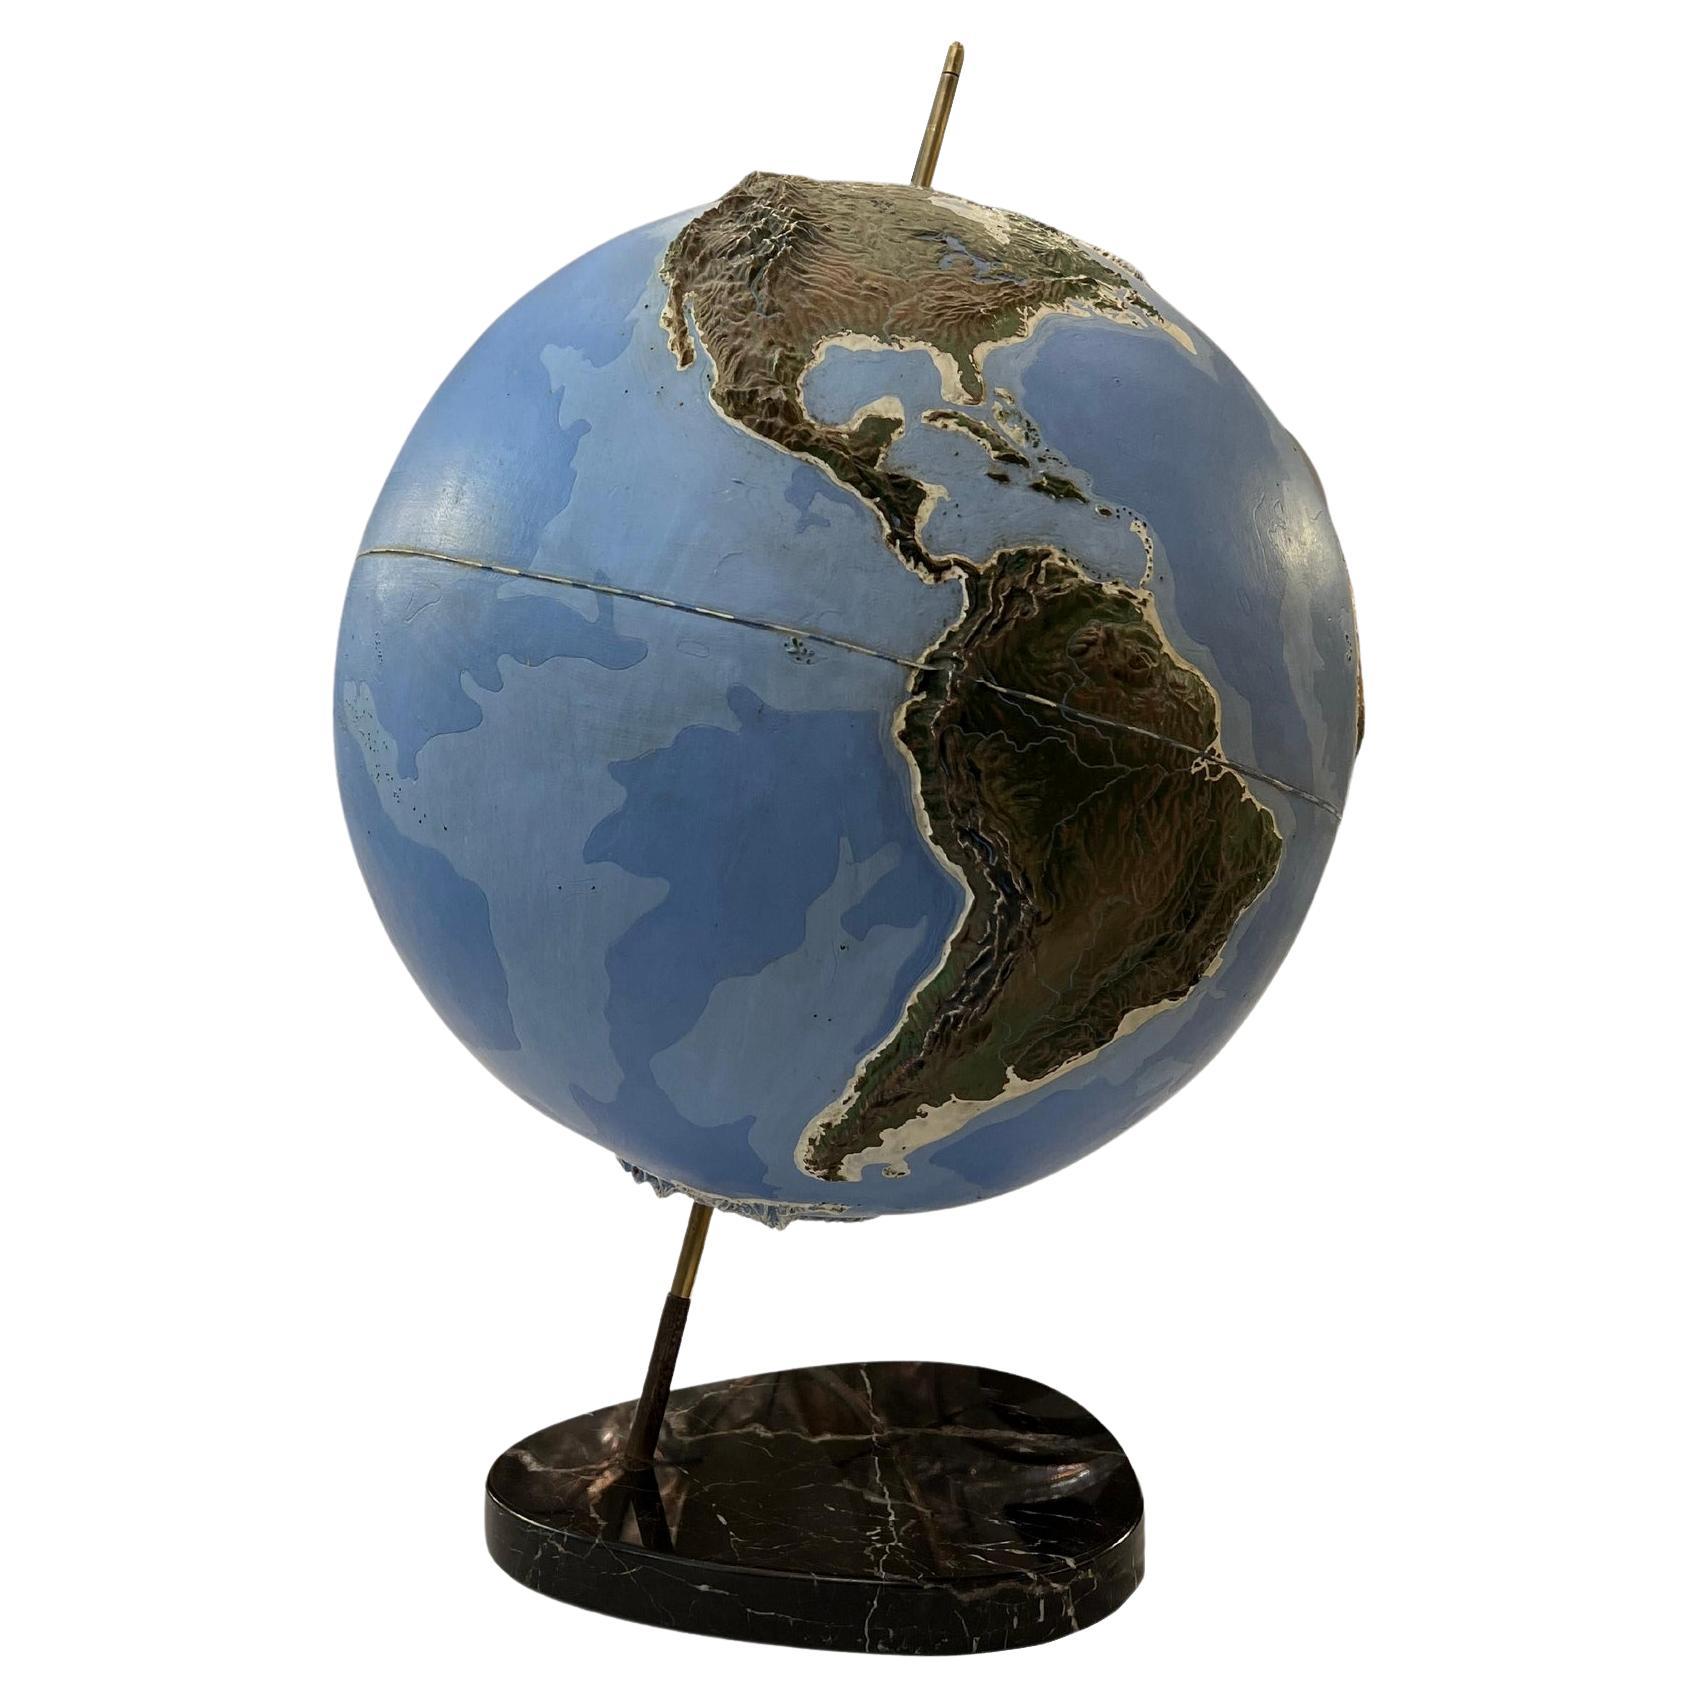 Wichtiger Relief-Erdglobus mit Darstellung der Ozeane und Kontinente.
Der Globus besteht aus lackiertem Plexiglas, das mit einer Messingachse am Marmorsockel befestigt ist. Frankreich um 1950.